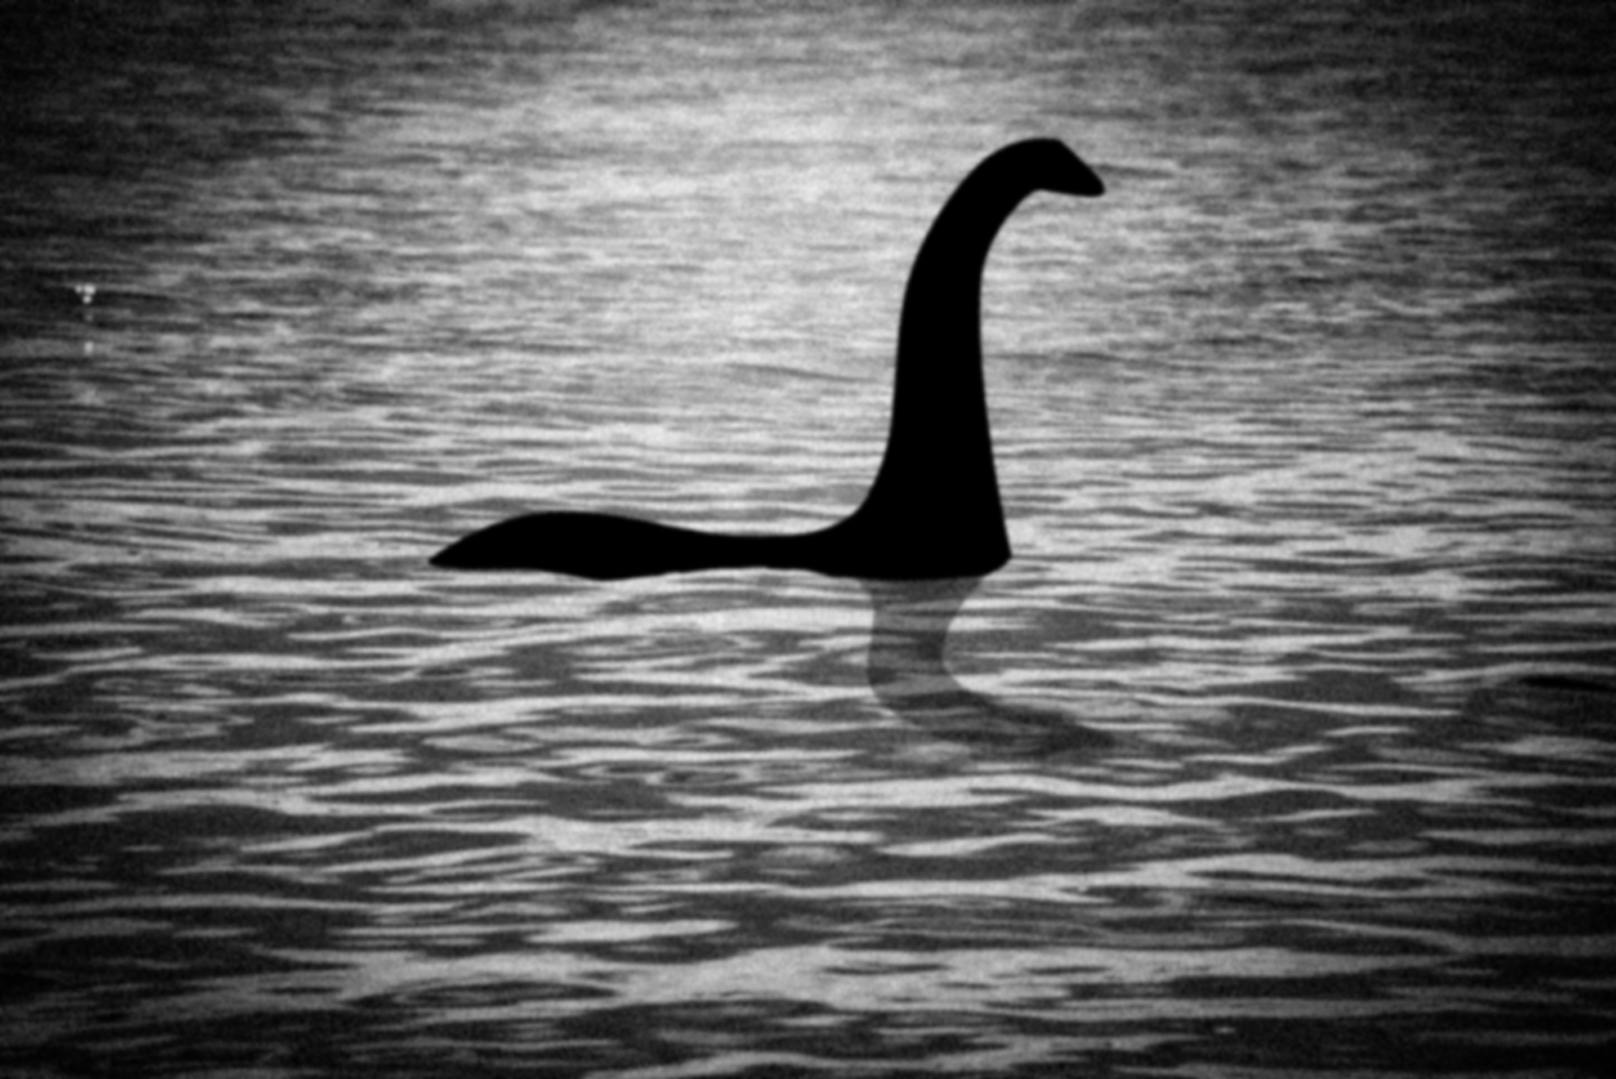 In Großbritannien gibt es seit 1934 ein Gesetz, dass das "Ungeheuer von Loch Ness" unter Naturschutz stellt, sollte es existieren. Der Grund?  Man wollte Wilderern und Trophäenjägern gesetzlich Einhalt gebieten können, sollte Nessie tatsächlich einmal auftauchen.